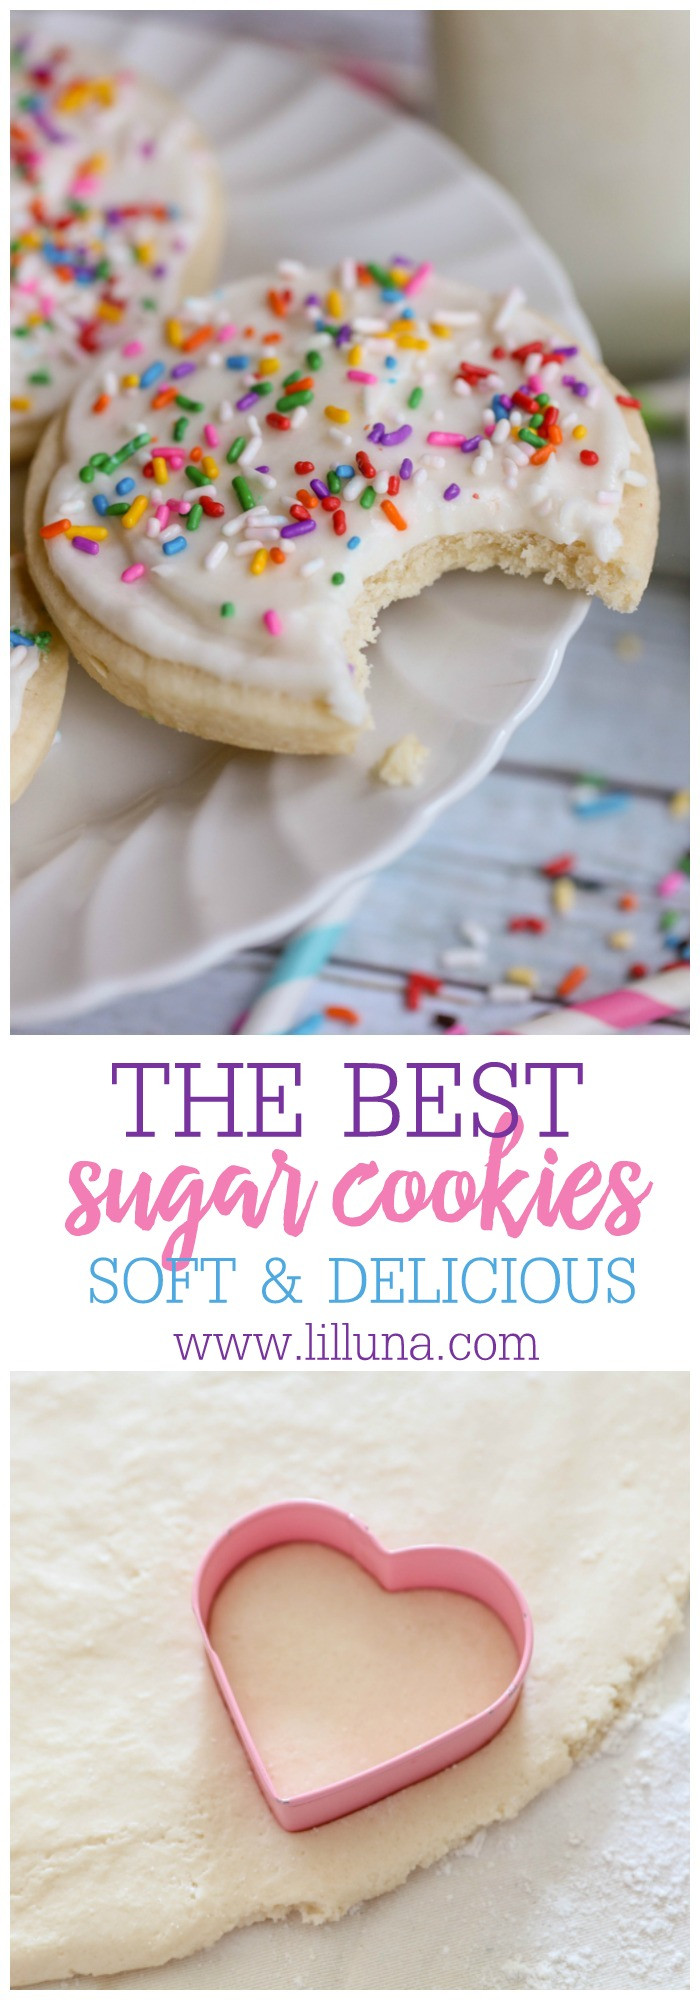 Sugar Cookies Soft
 Soft Sugar Cookie Recipe